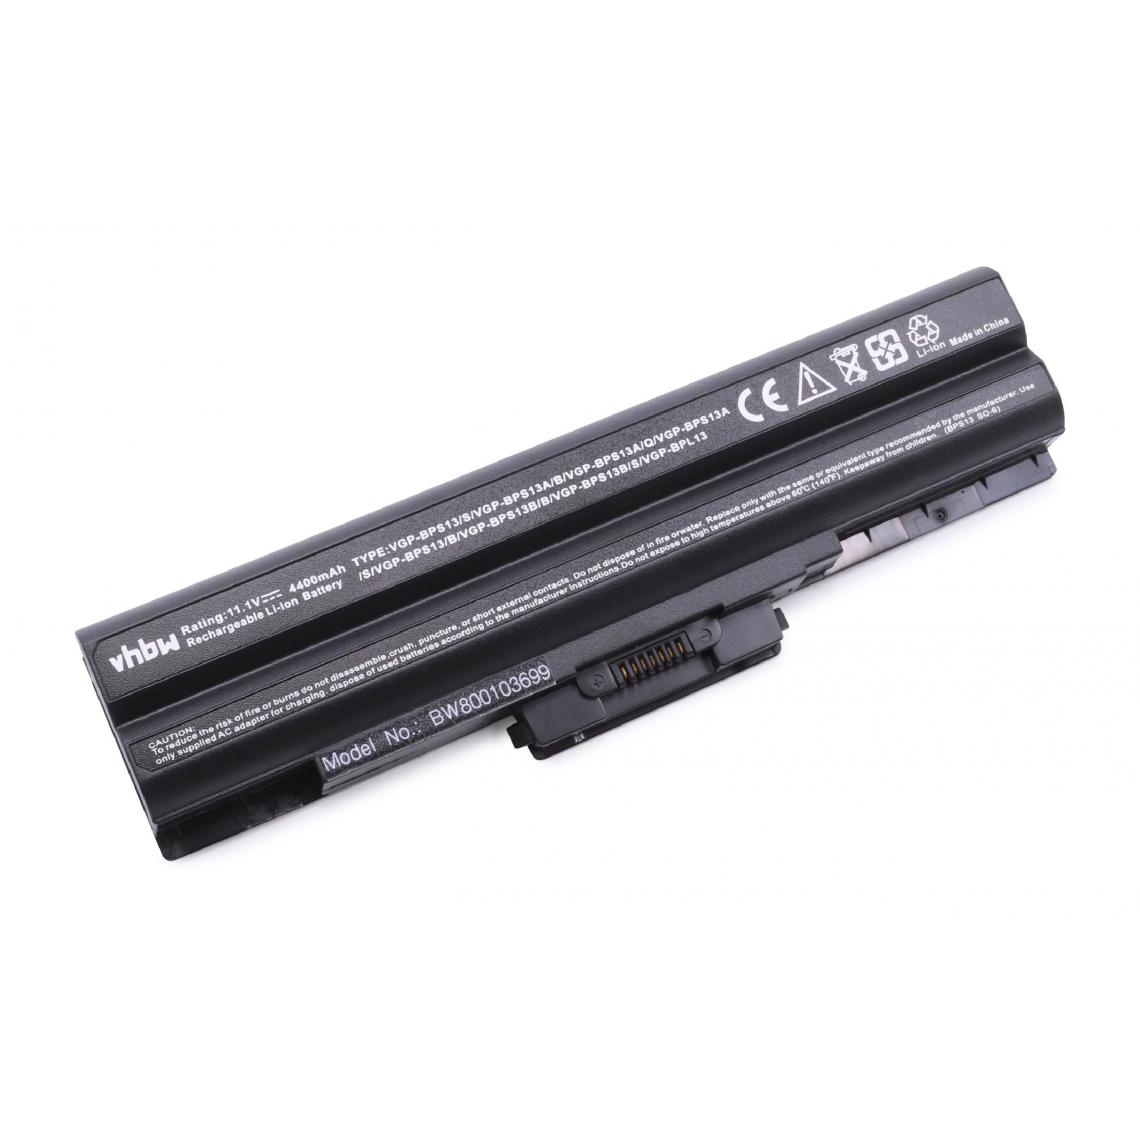 Vhbw - vhbw Batterie compatible avec Sony Vaio VGN-TX37CP/L, VGN-TX38CP/L, VGN-TX45C/B, VGN-TX46C/B ordinateur portable (4400mAh, 11,1V, noir) - Batterie PC Portable